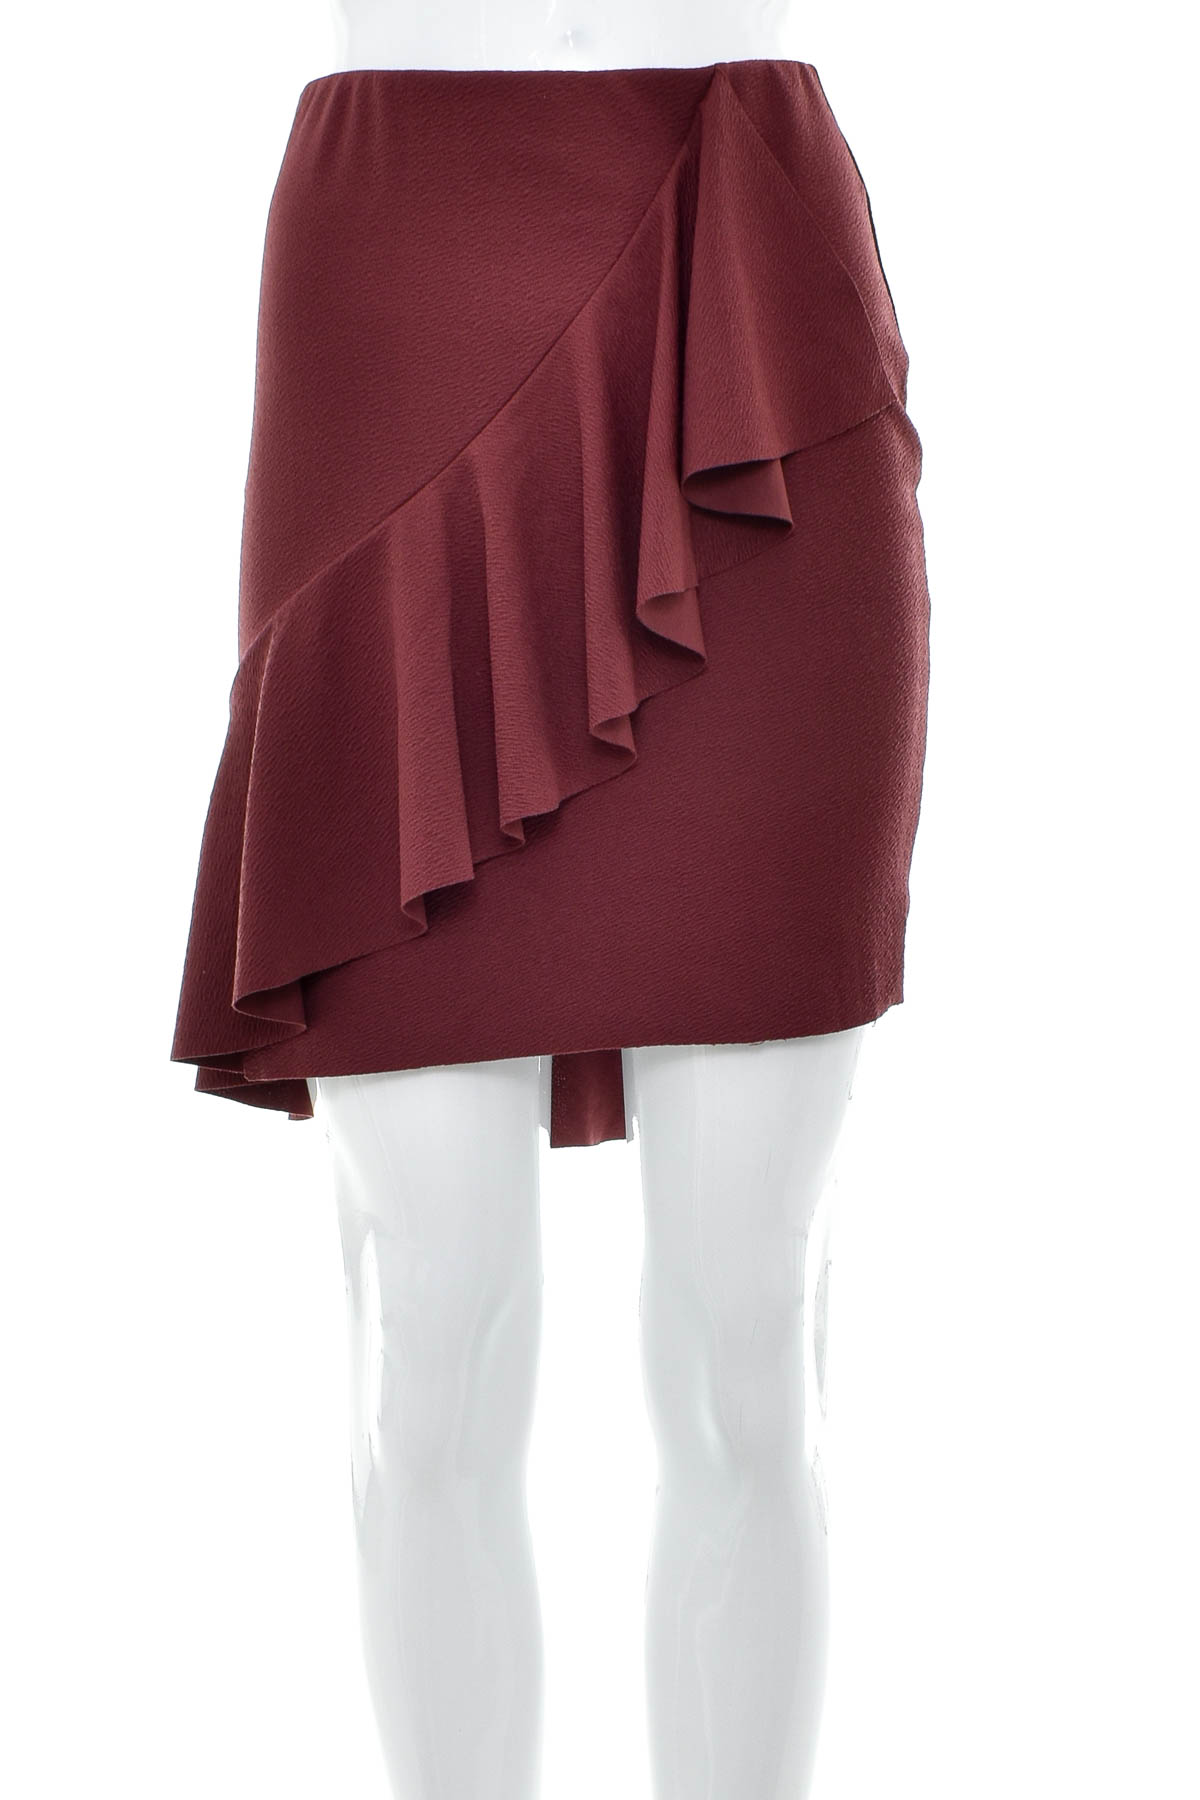 Skirt - Gina Tricot - 0